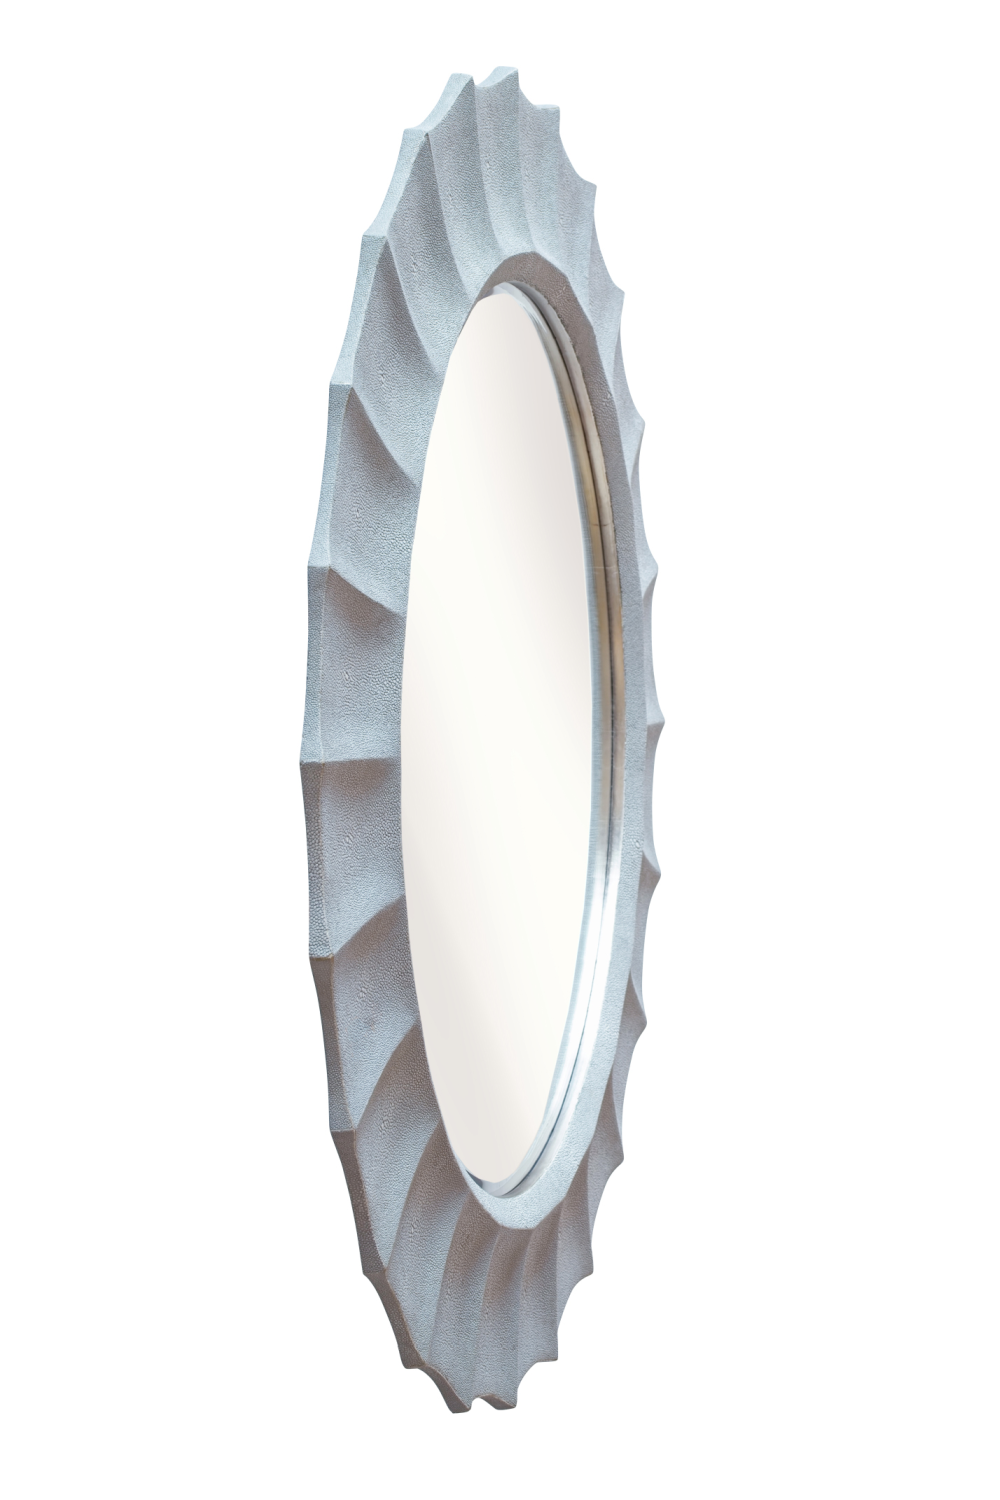 Light Gray Shagreen Mirror | Andrew Martin Joplin | Oroatrade.com